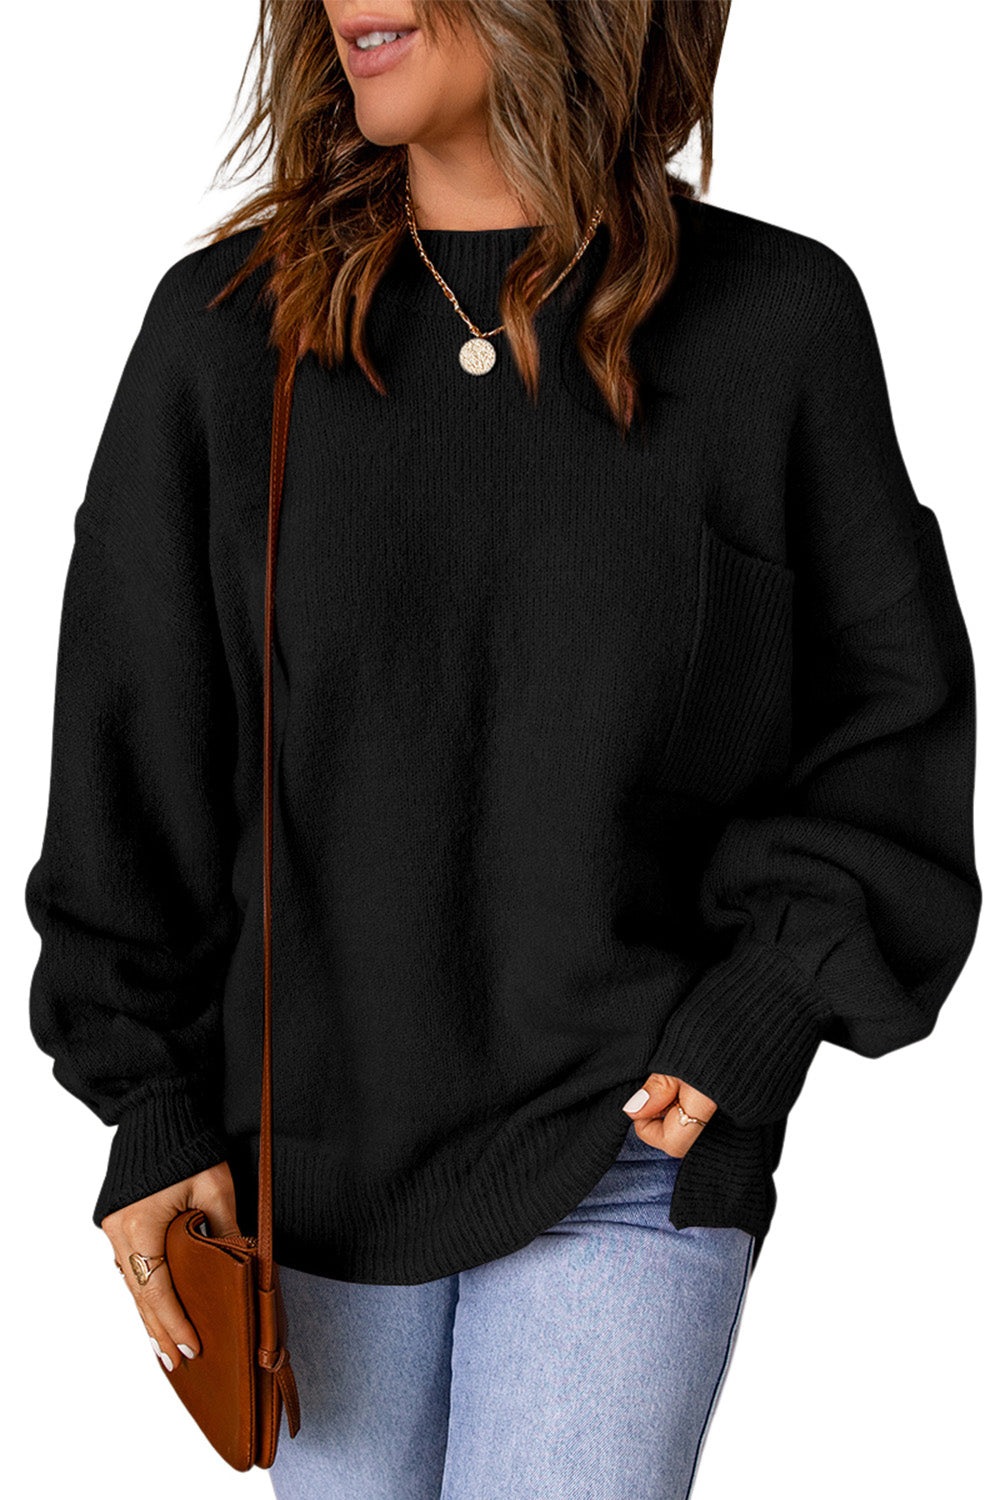 Crni jednobojni pulover s džepovima s puf rukavima